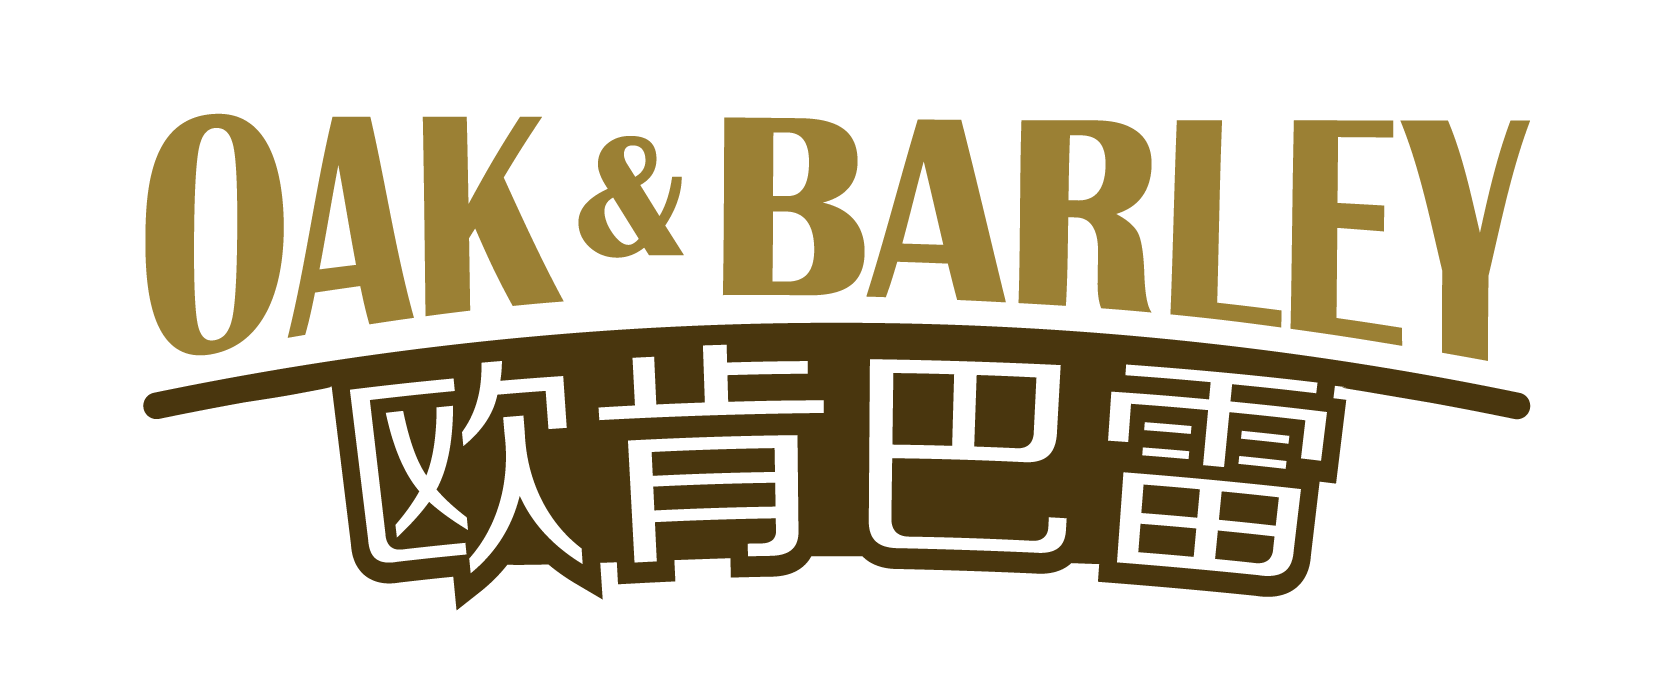 Oak and Barley